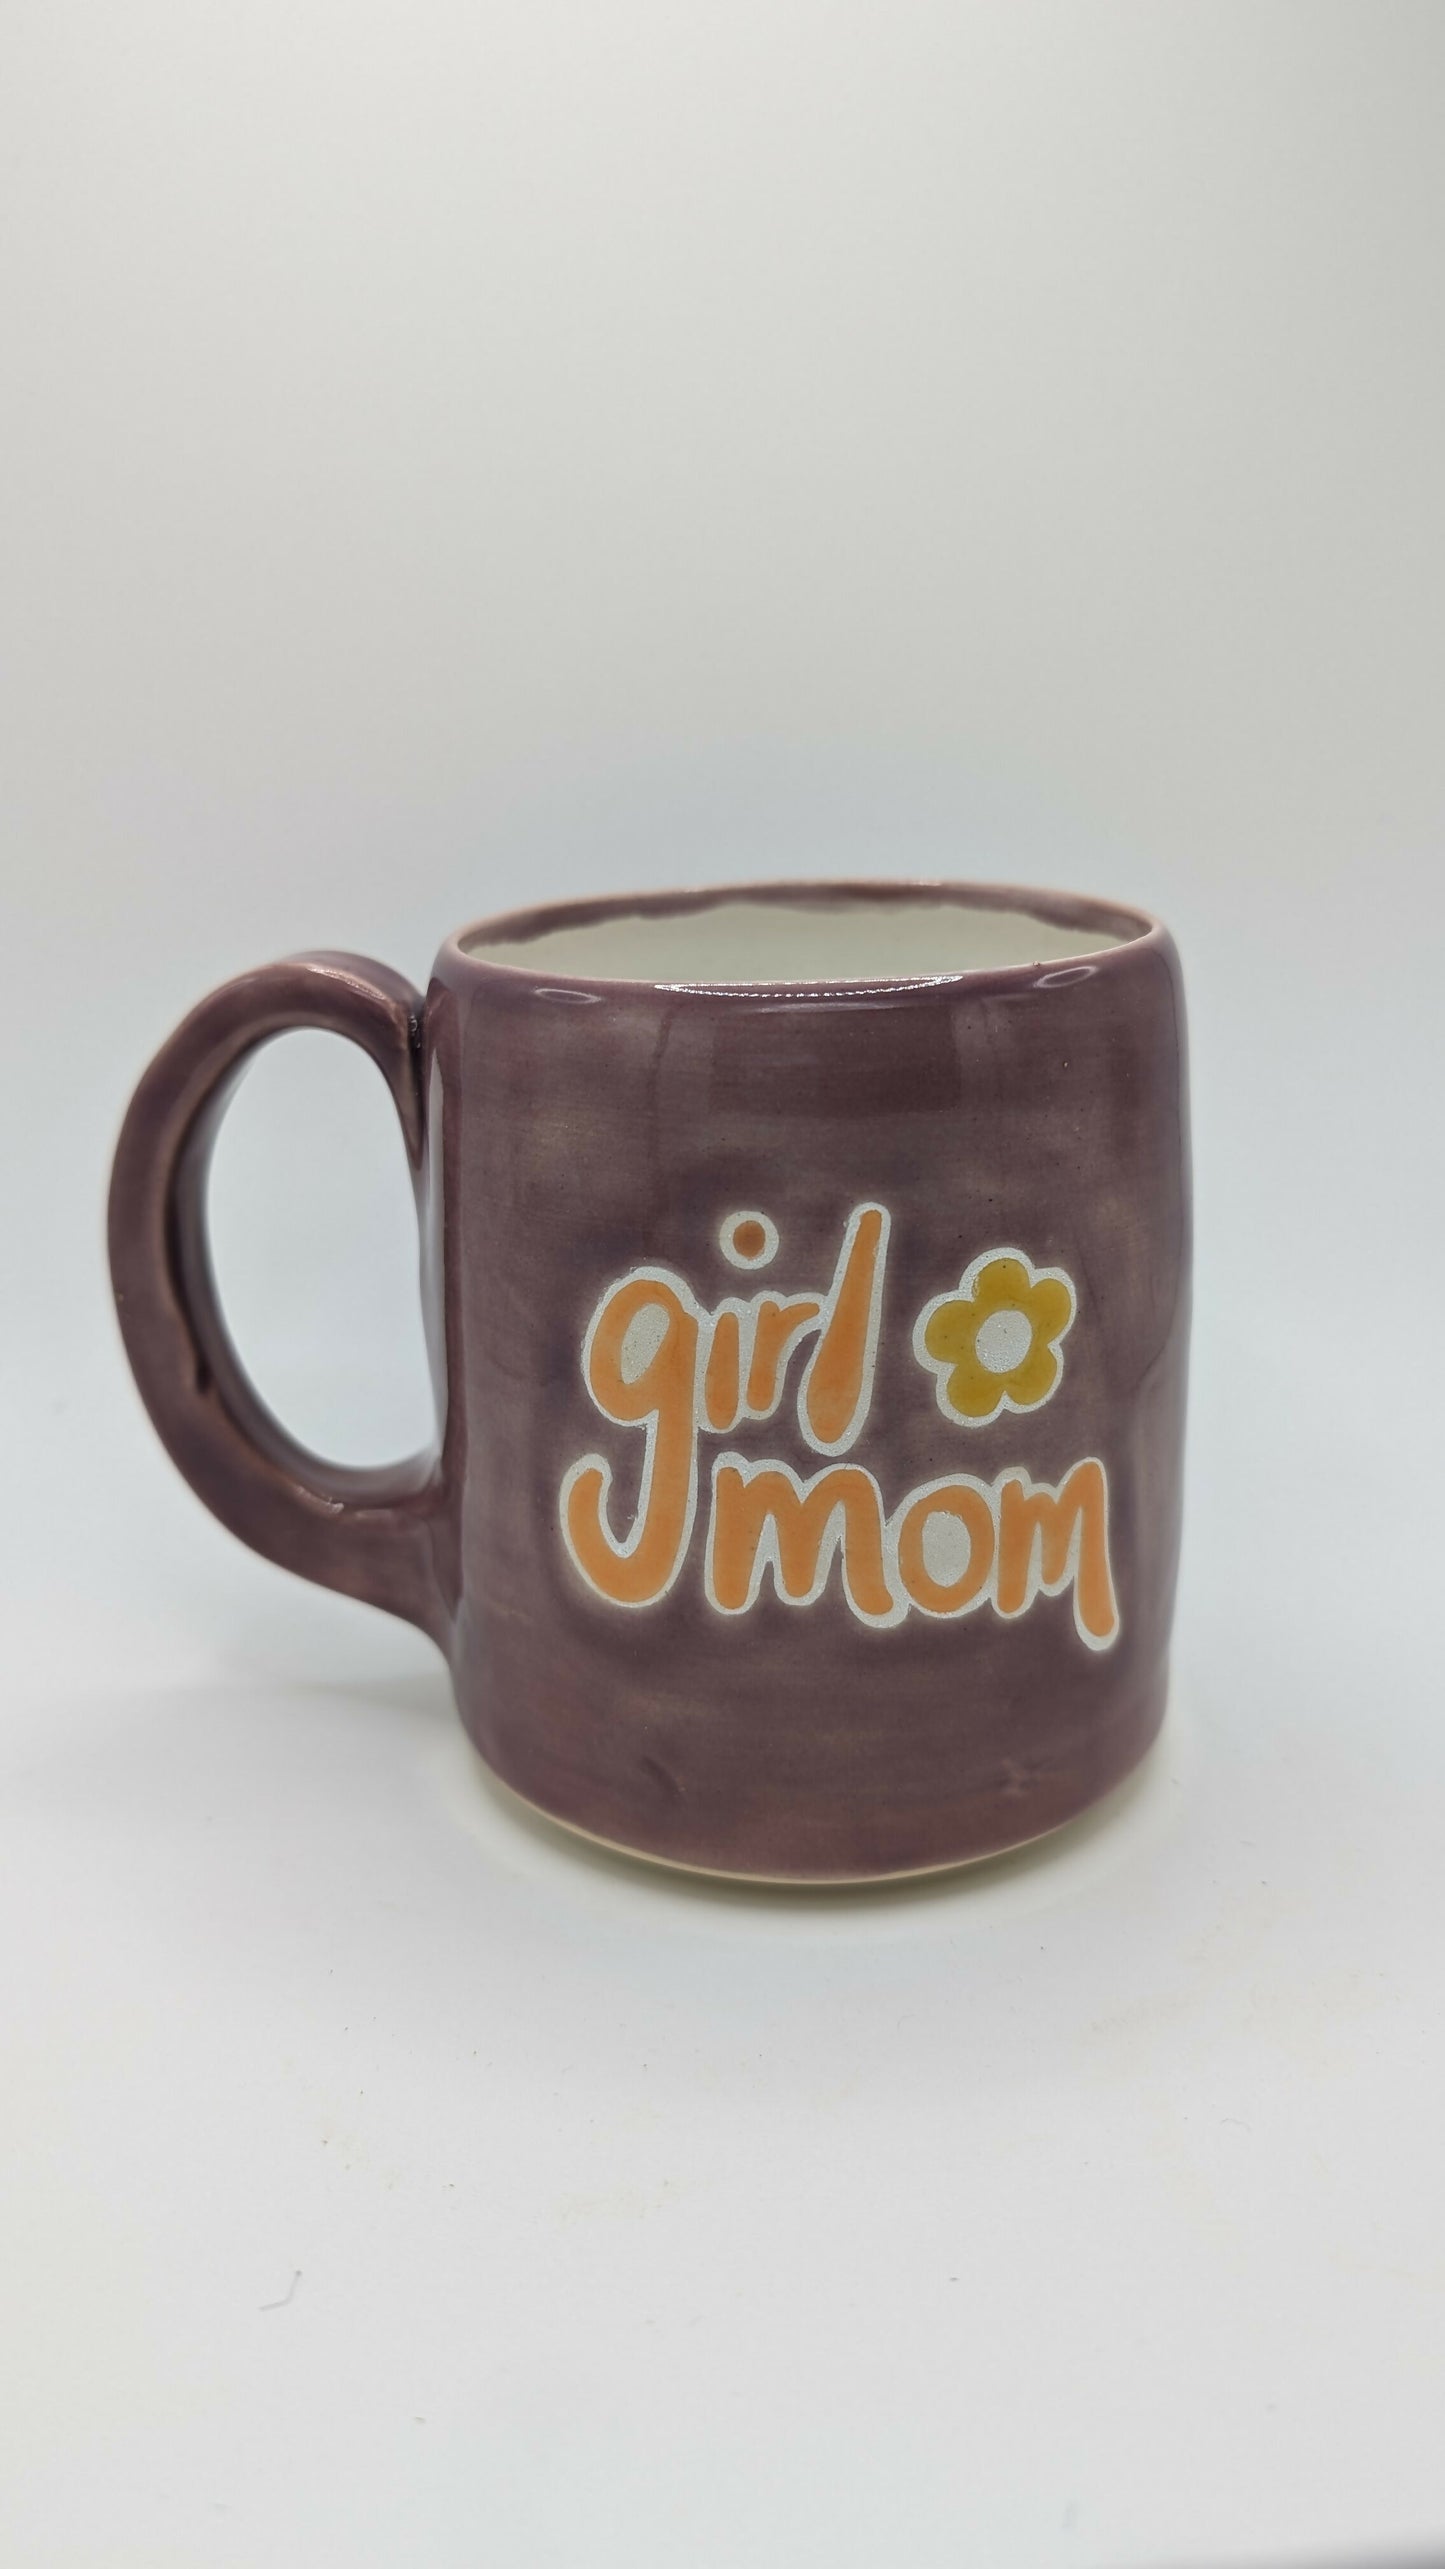 Girl Mom Mug